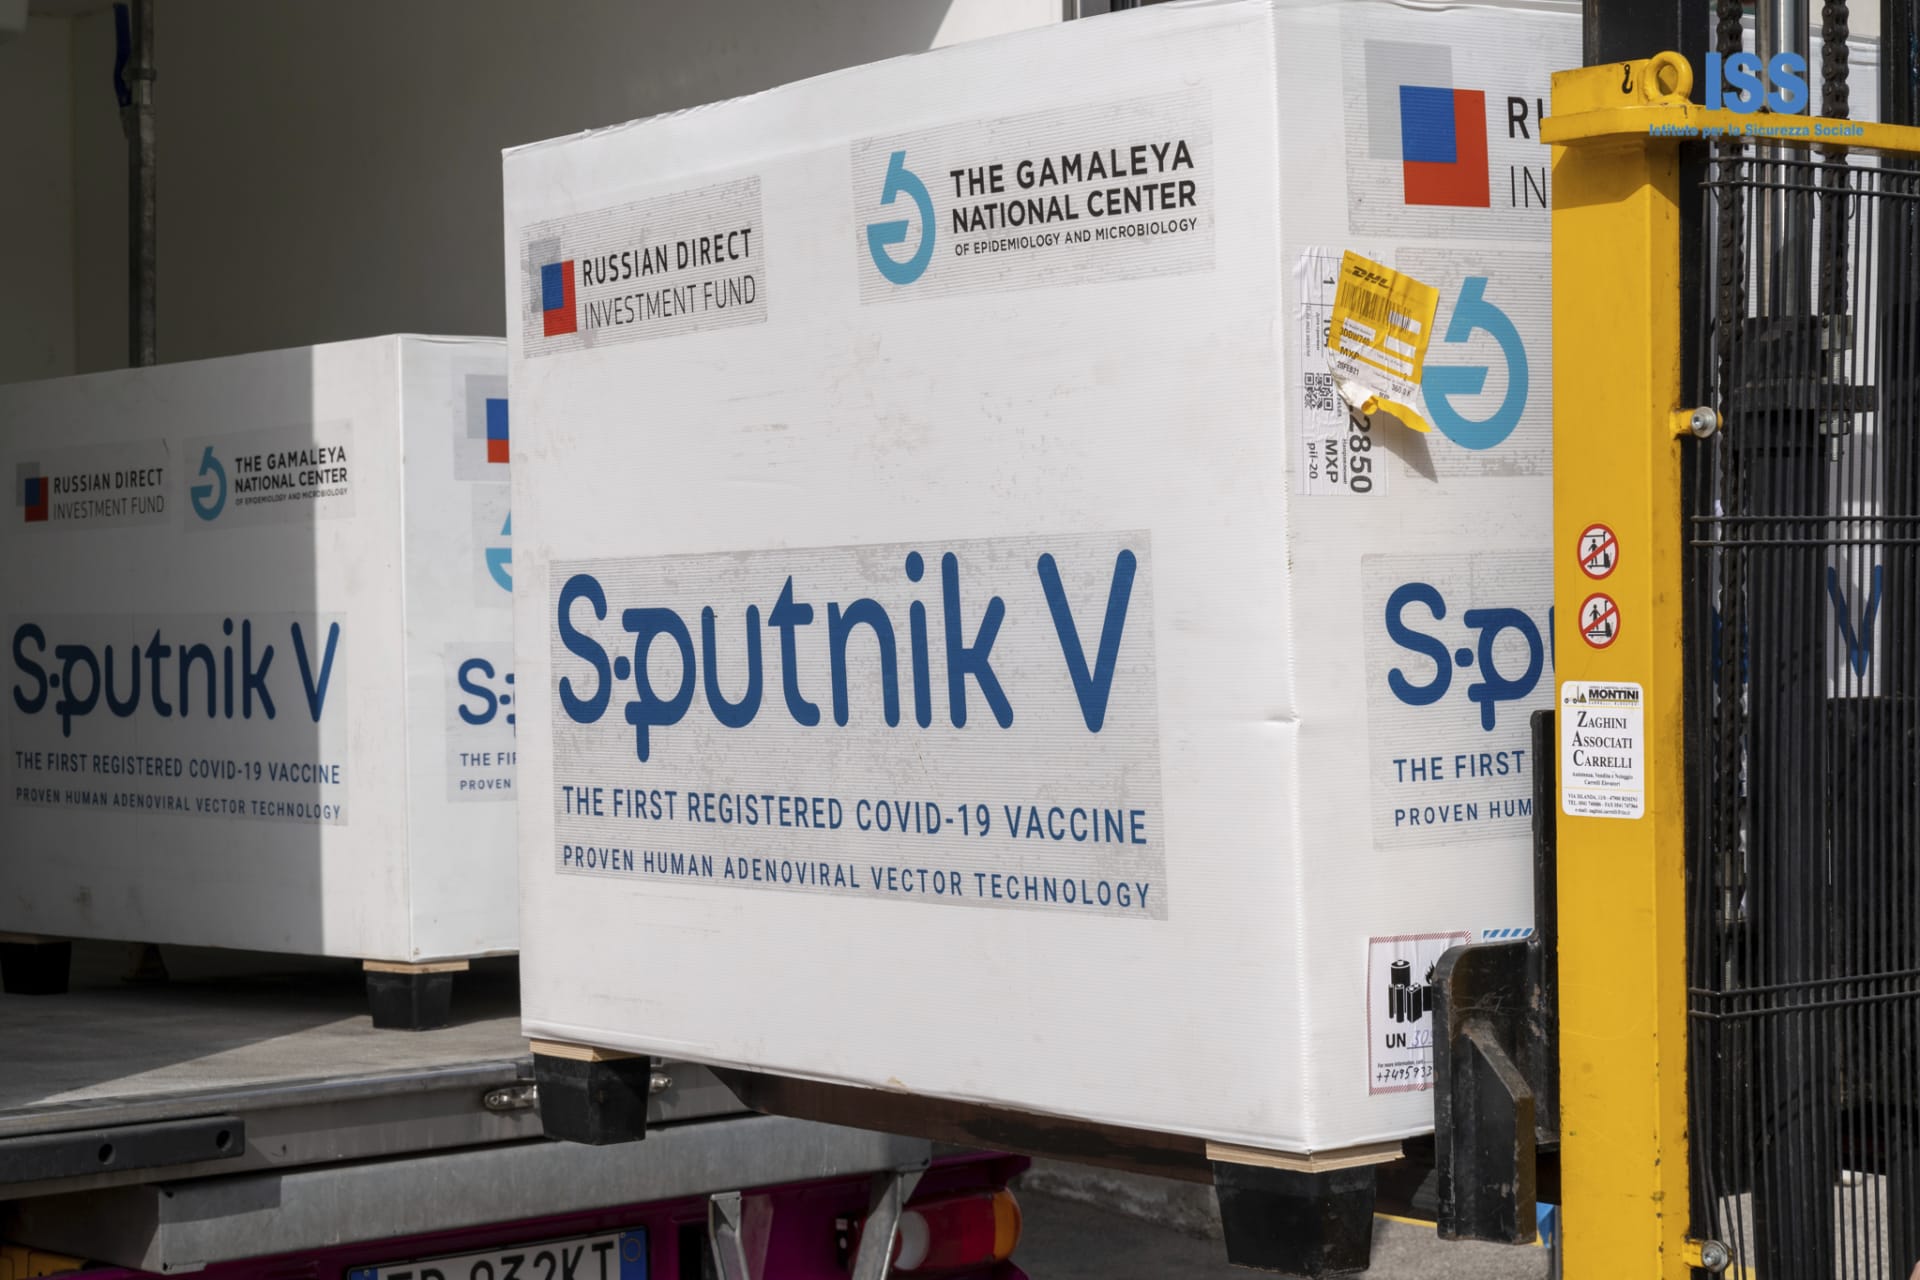 Šarže ruské vakcíny Sputnik V proti COVID-19 zaslané do Brazílie v sobě měly živou verzi viru způsobujícího chřipku. (Ilustrační foto)